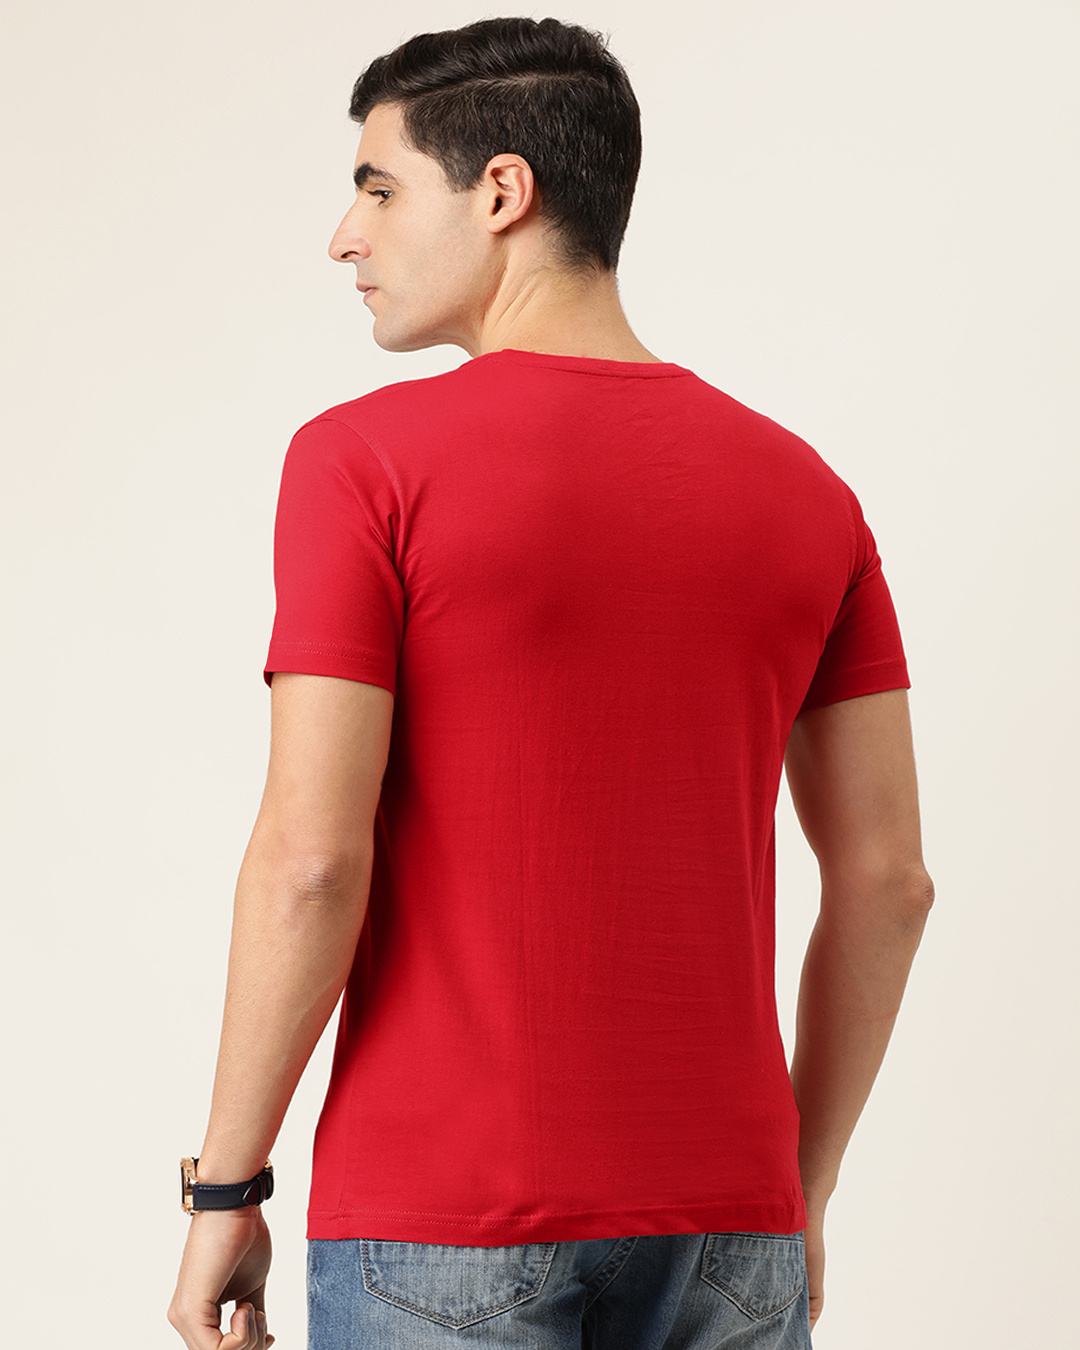 Shop Adventure Begins Half Sleeve T Shirt For Men-Back